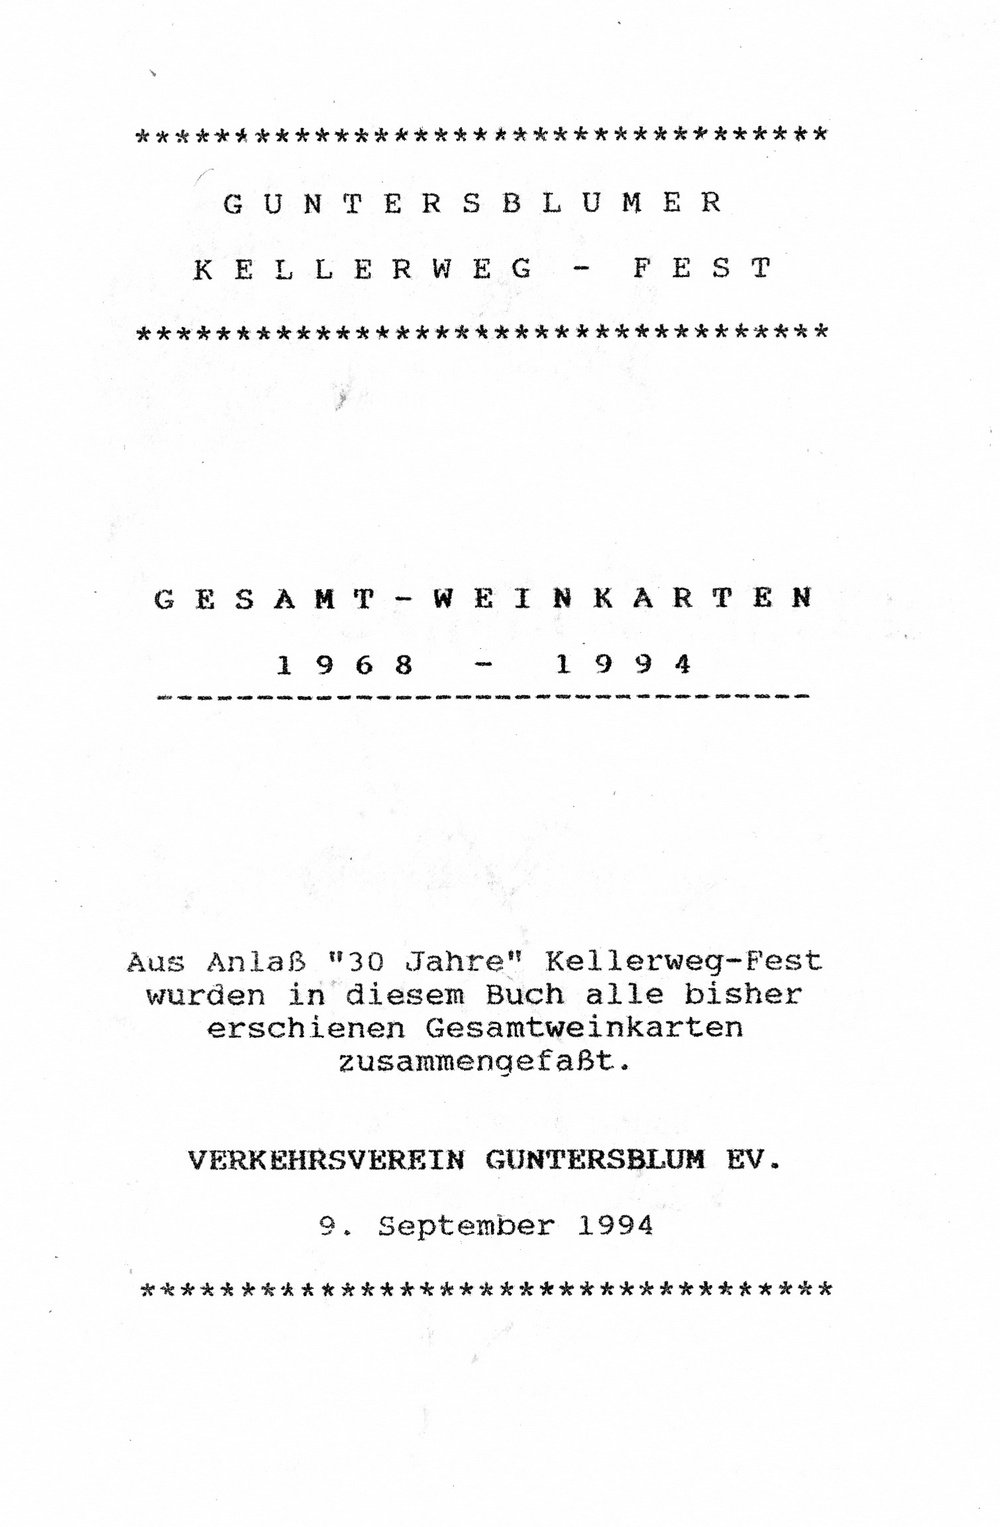 Kellerweg-Fest Gesamt-Weinkarten 1968-1994 (Kulturverein Guntersblum CC BY-NC-SA)